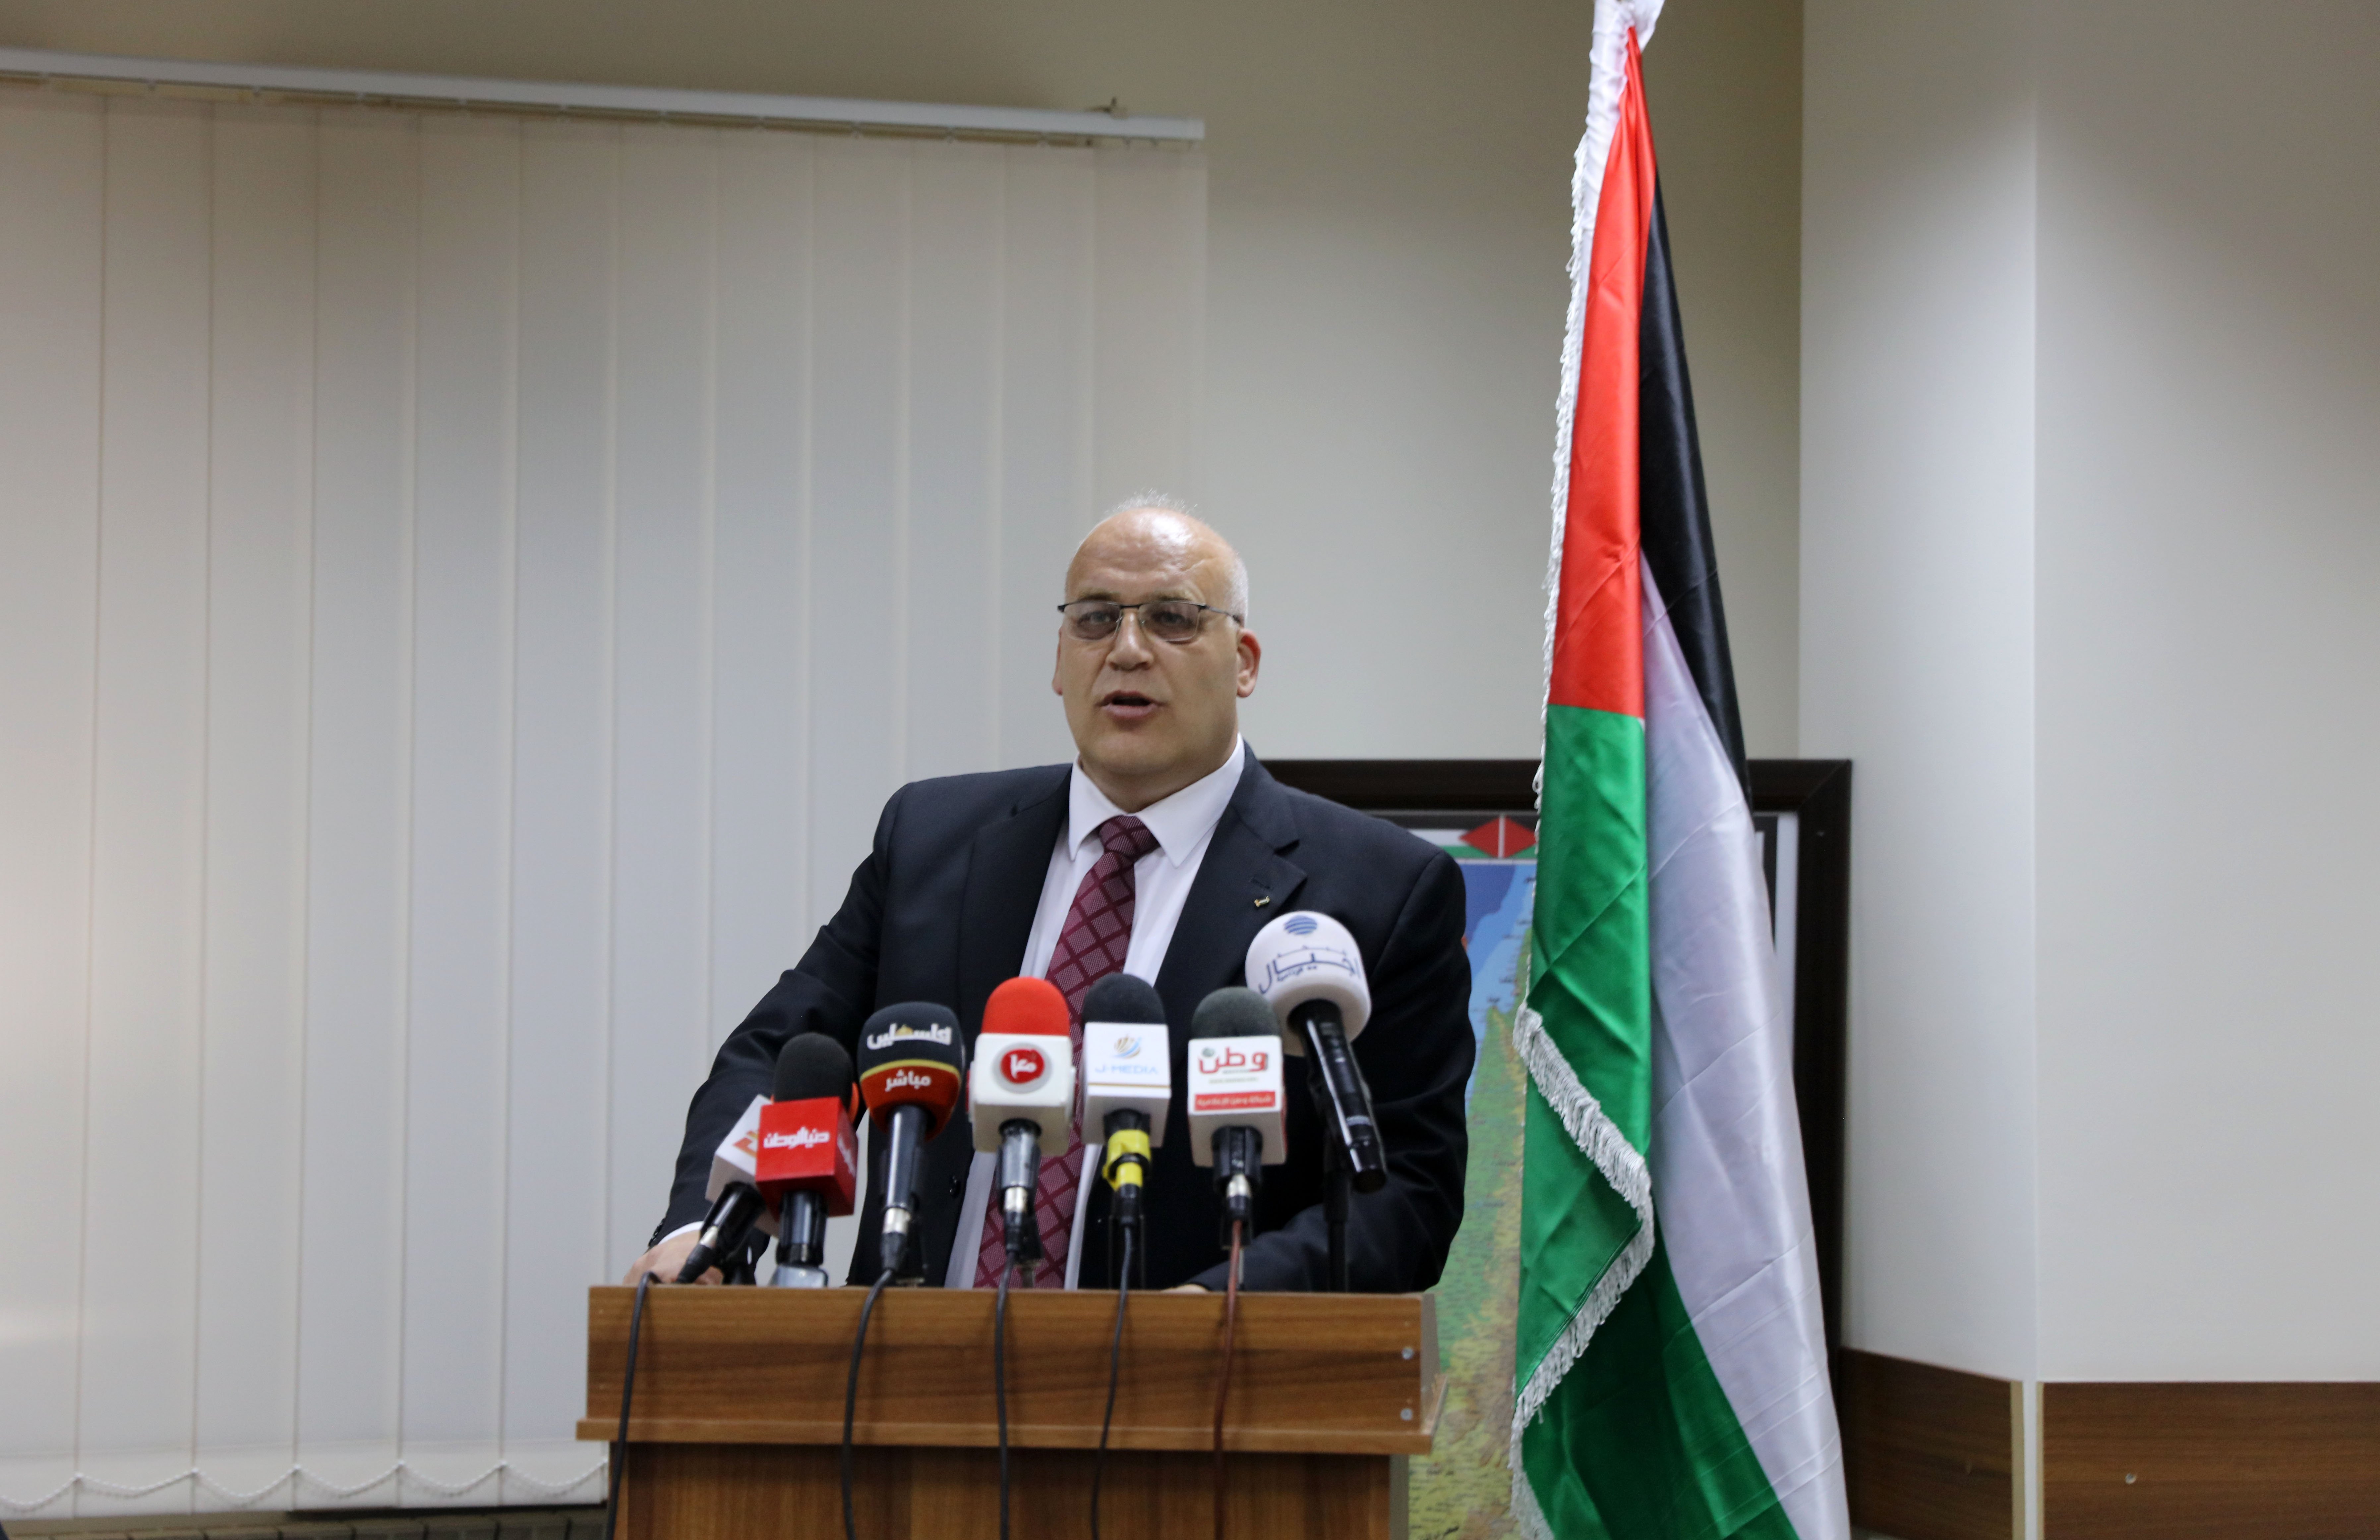 وزير العمل الفلسطيني: بدء توزيع المستحقات لأكثر من 40 الف عامل متضرر من "كورونا" في الضفة وغزة -2